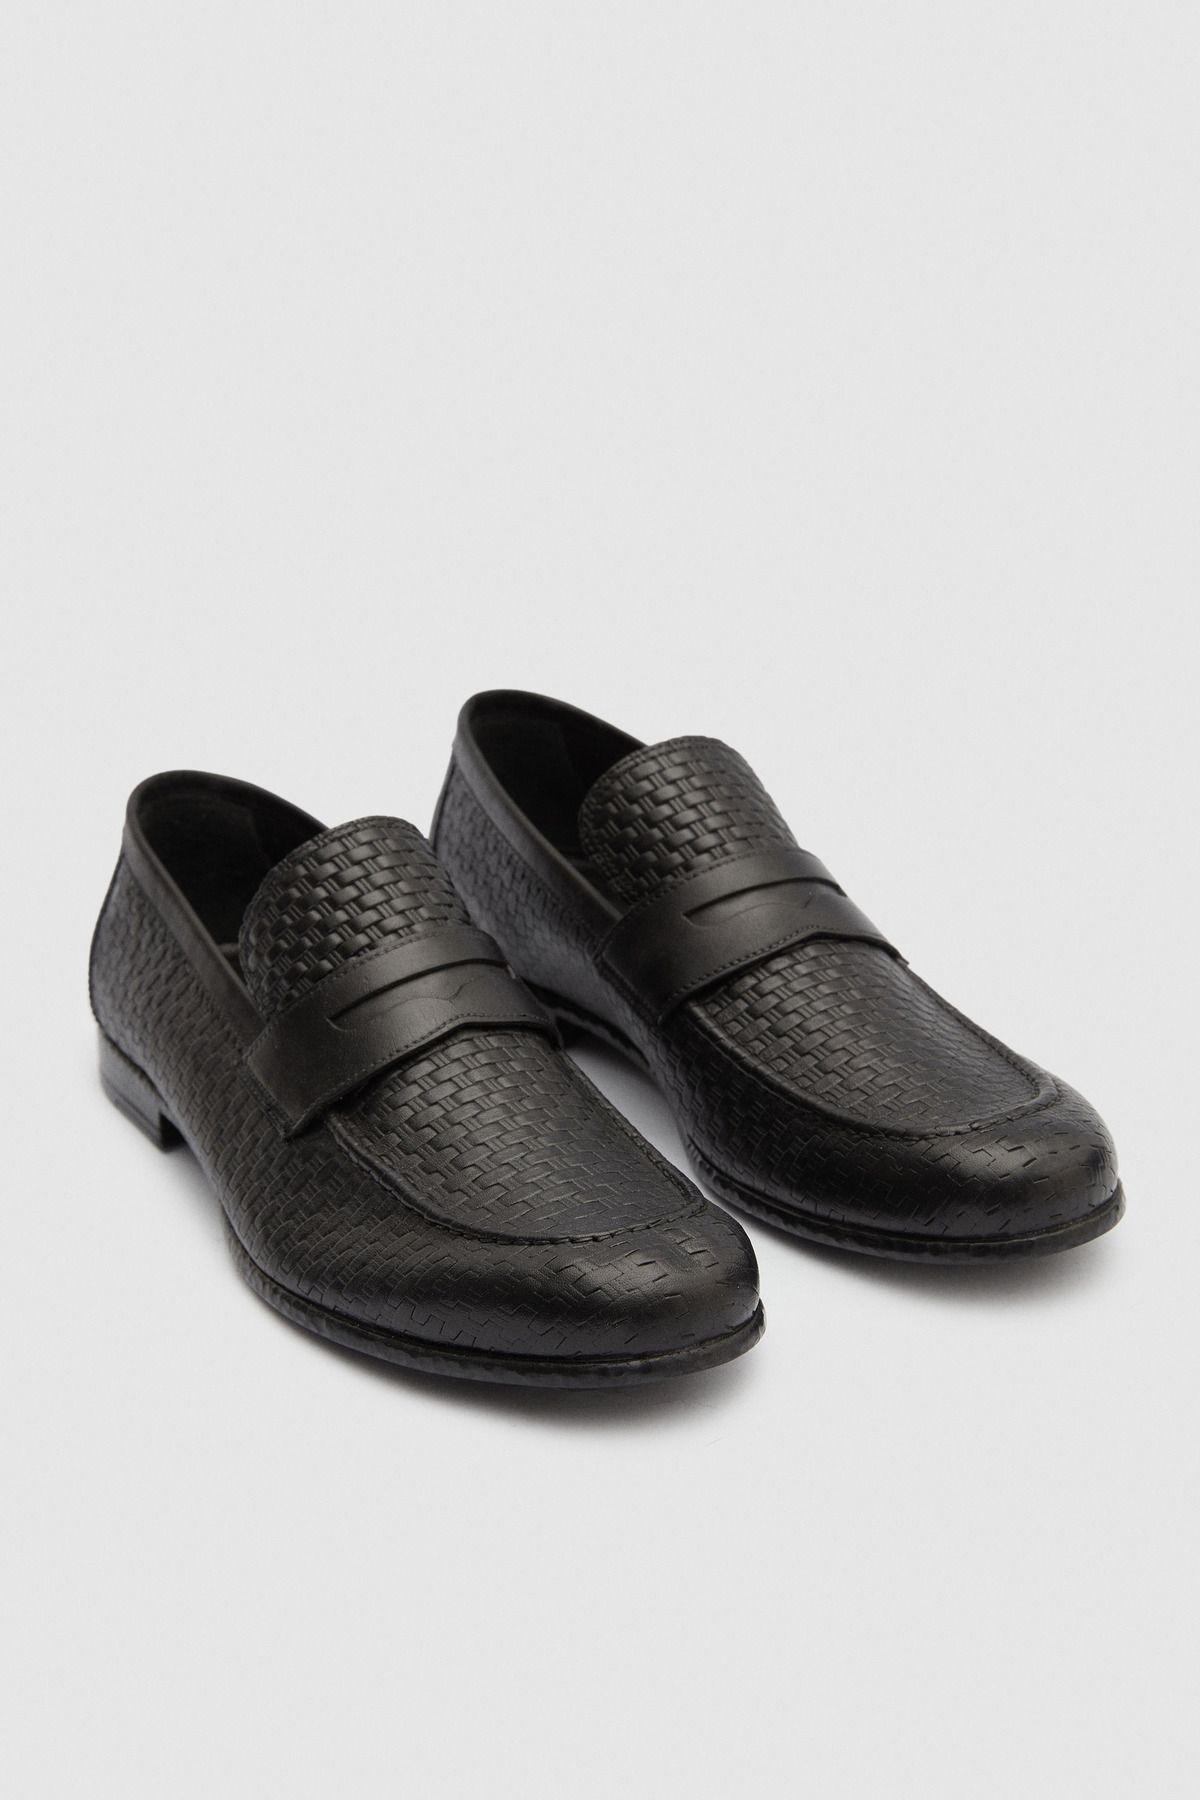 D'S Damat Siyah Desenli Loafer Ayakkabı